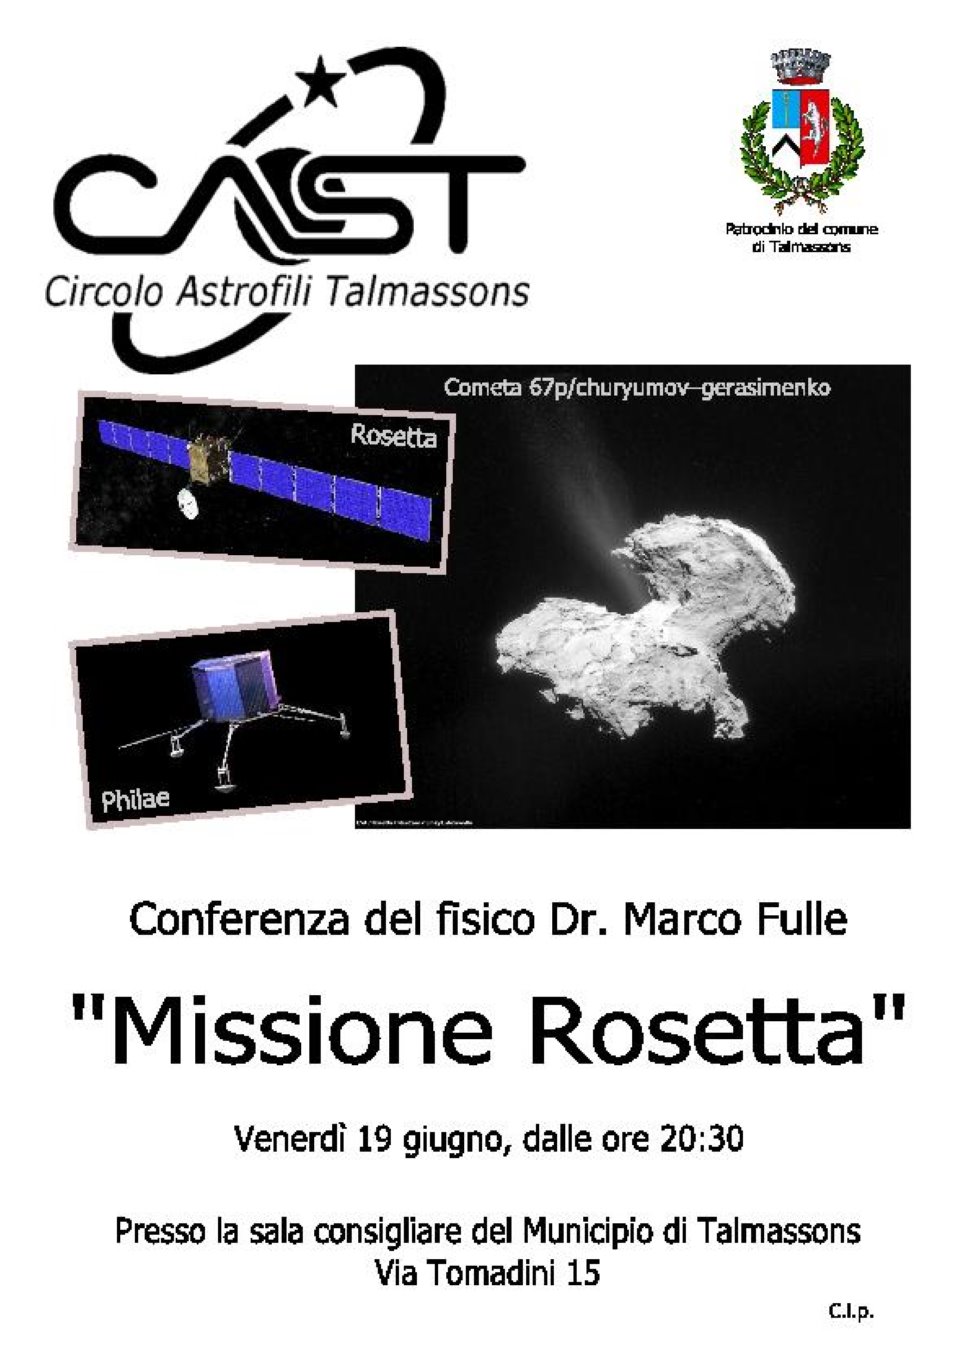 La missione Rosetta. Una conferenza con l'astronomo Marco Fulle